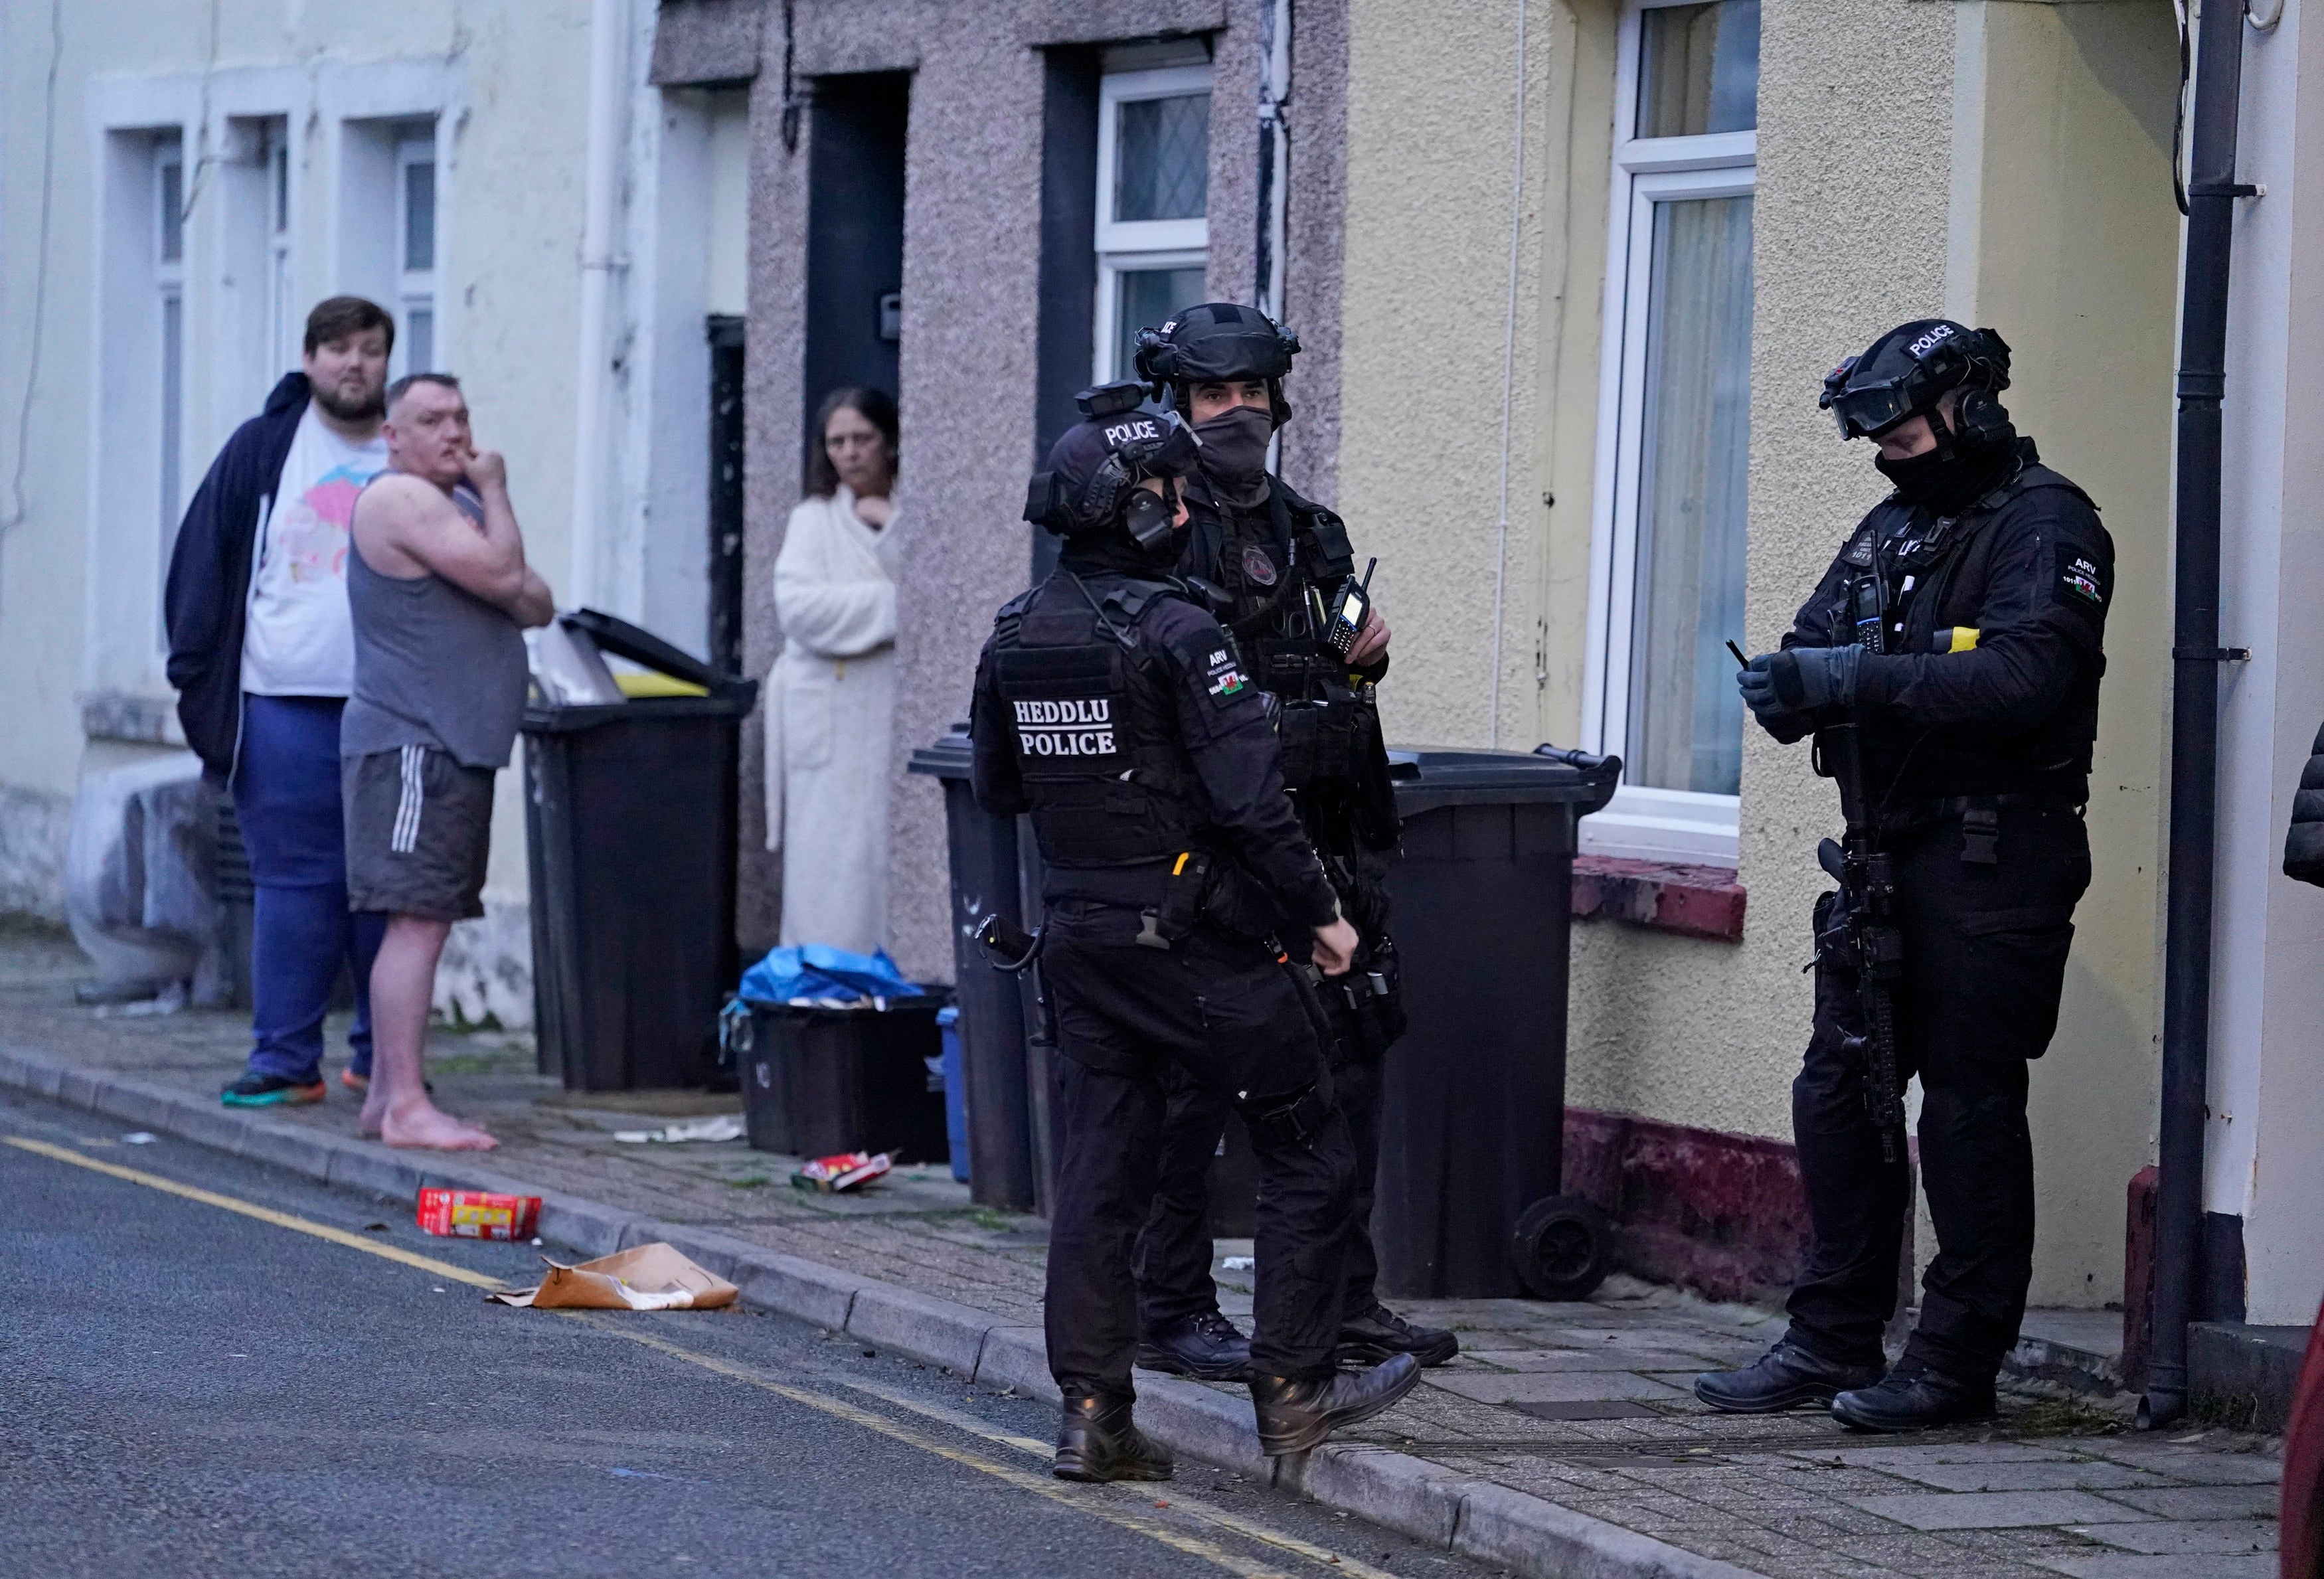 Armed police on Wyndham Street in Merthyr Tydfil